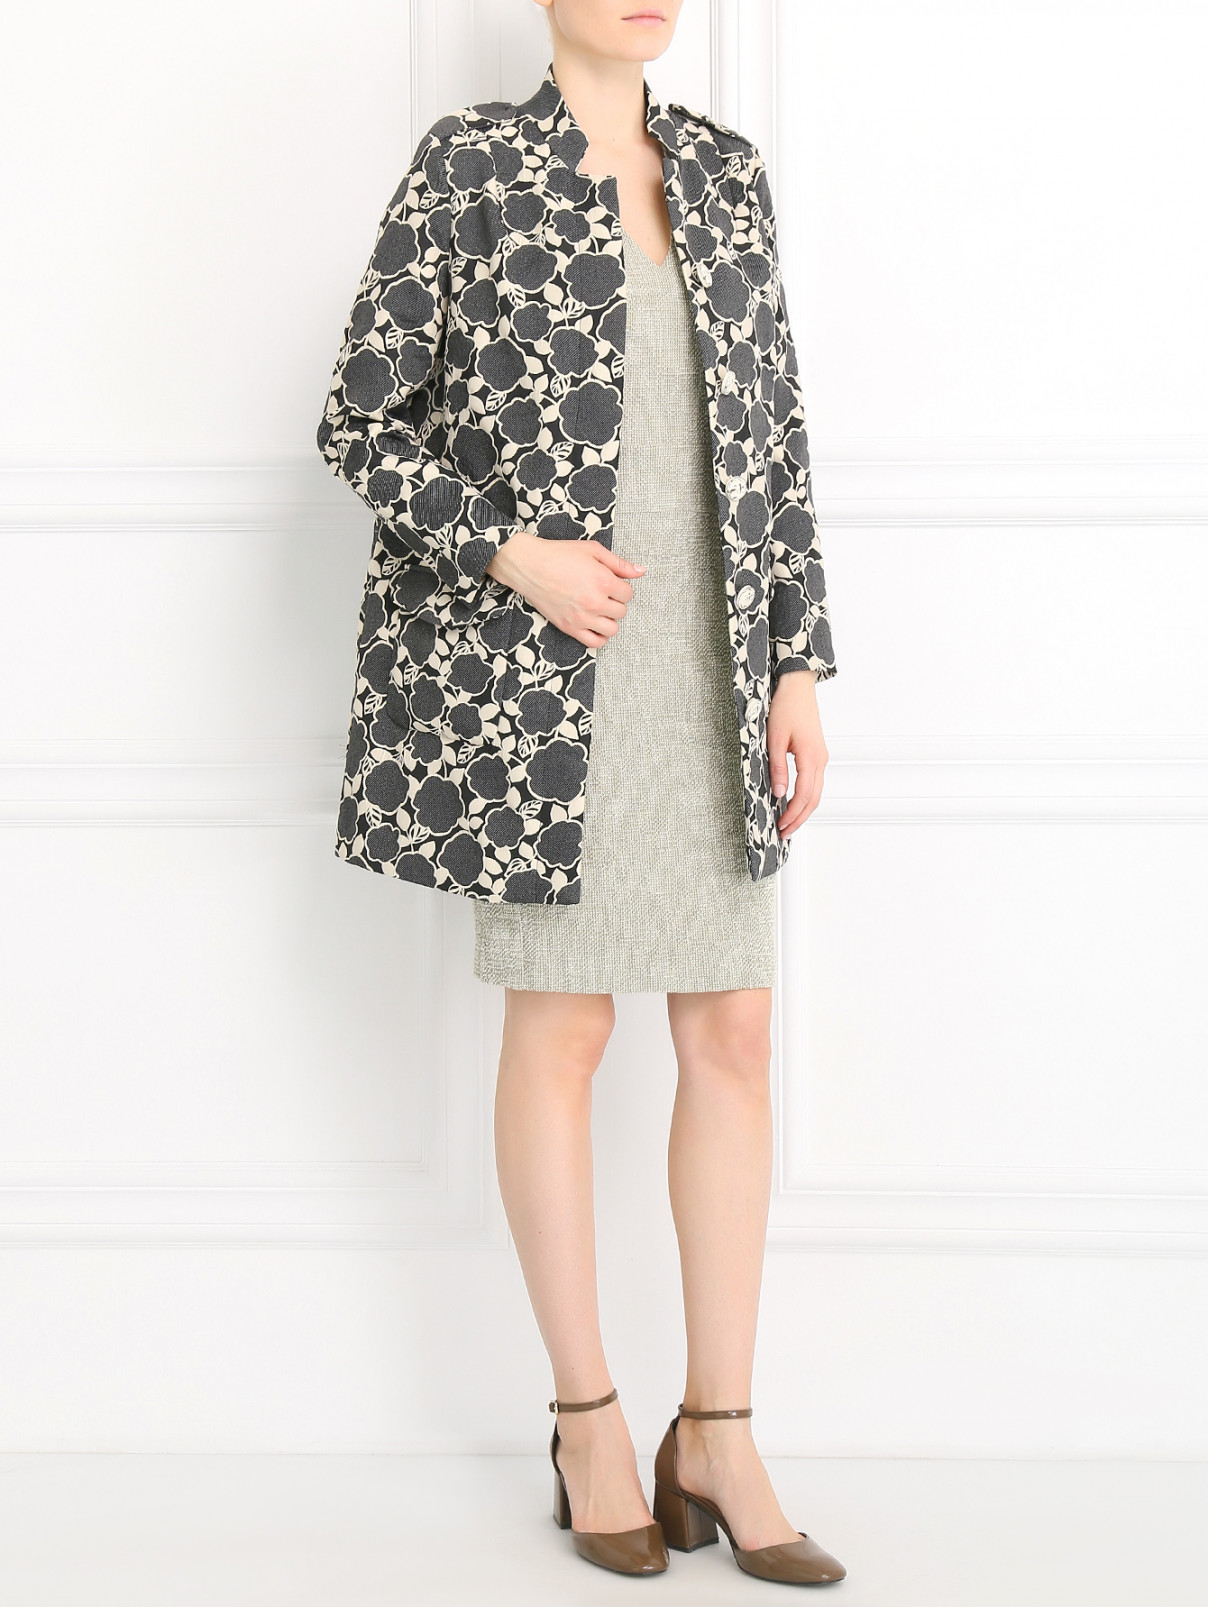 Пальто с узором и накладными карманами Femme by Michele R.  –  Модель Общий вид  – Цвет:  Черный